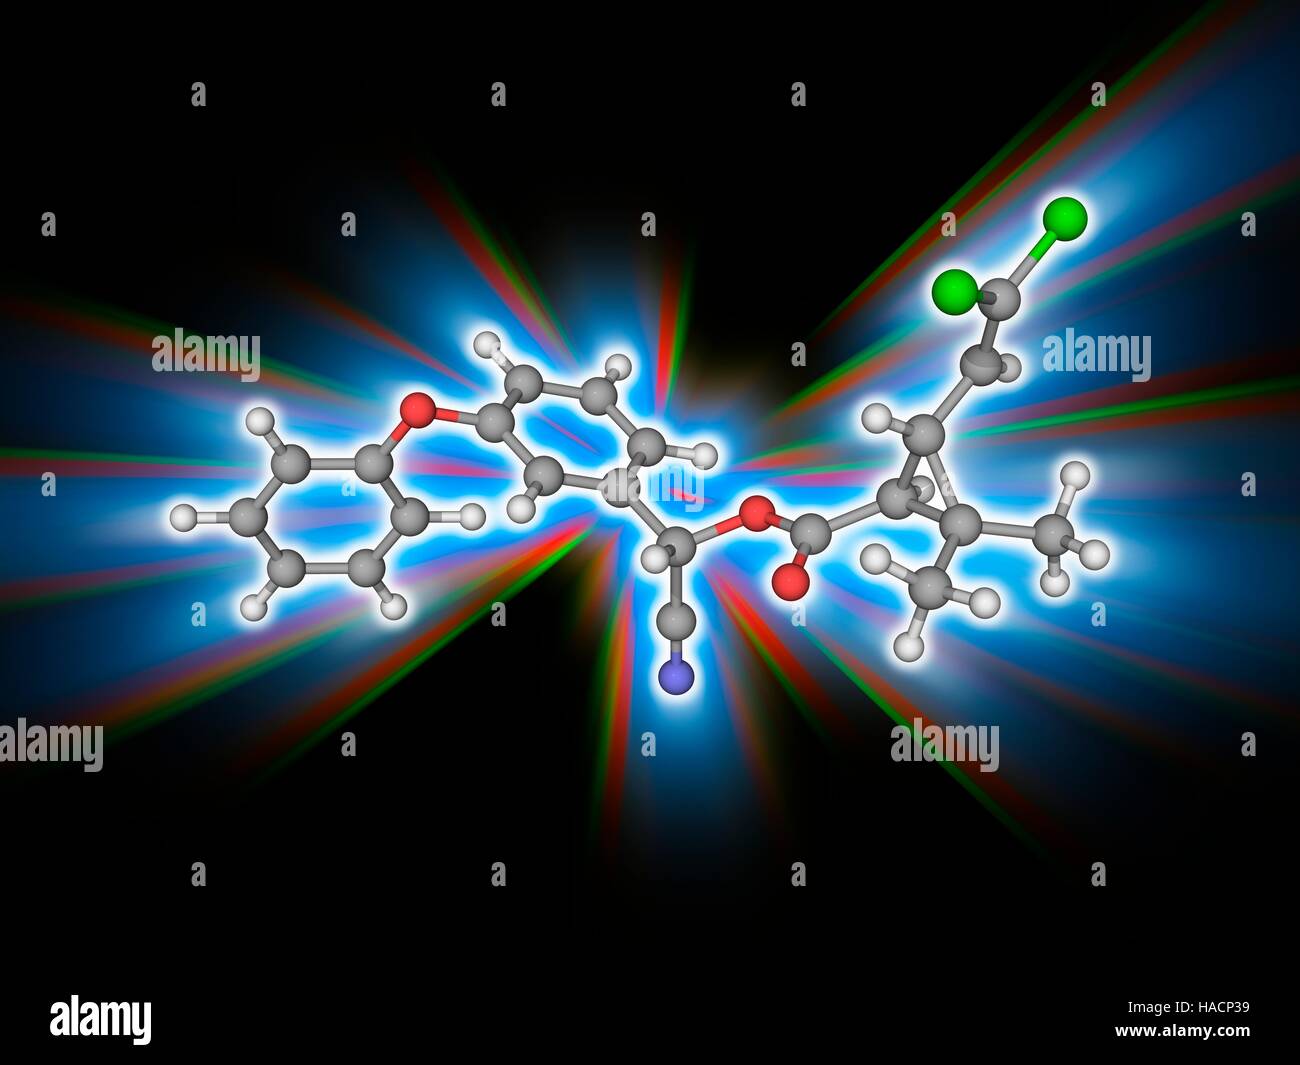 Cypermethrin. Molekulares Modell des synthetischen organischen Verbindung Cypermethrin (C22. H19. CL2.N.O3) als Insektizid verwendet. Atome als Kugeln dargestellt werden und sind farblich gekennzeichnet: Kohlenstoff (grau), Wasserstoff (weiß), Stickstoff (blau), Sauerstoff (rot) und Chlor (grün). Abbildung. Stockfoto